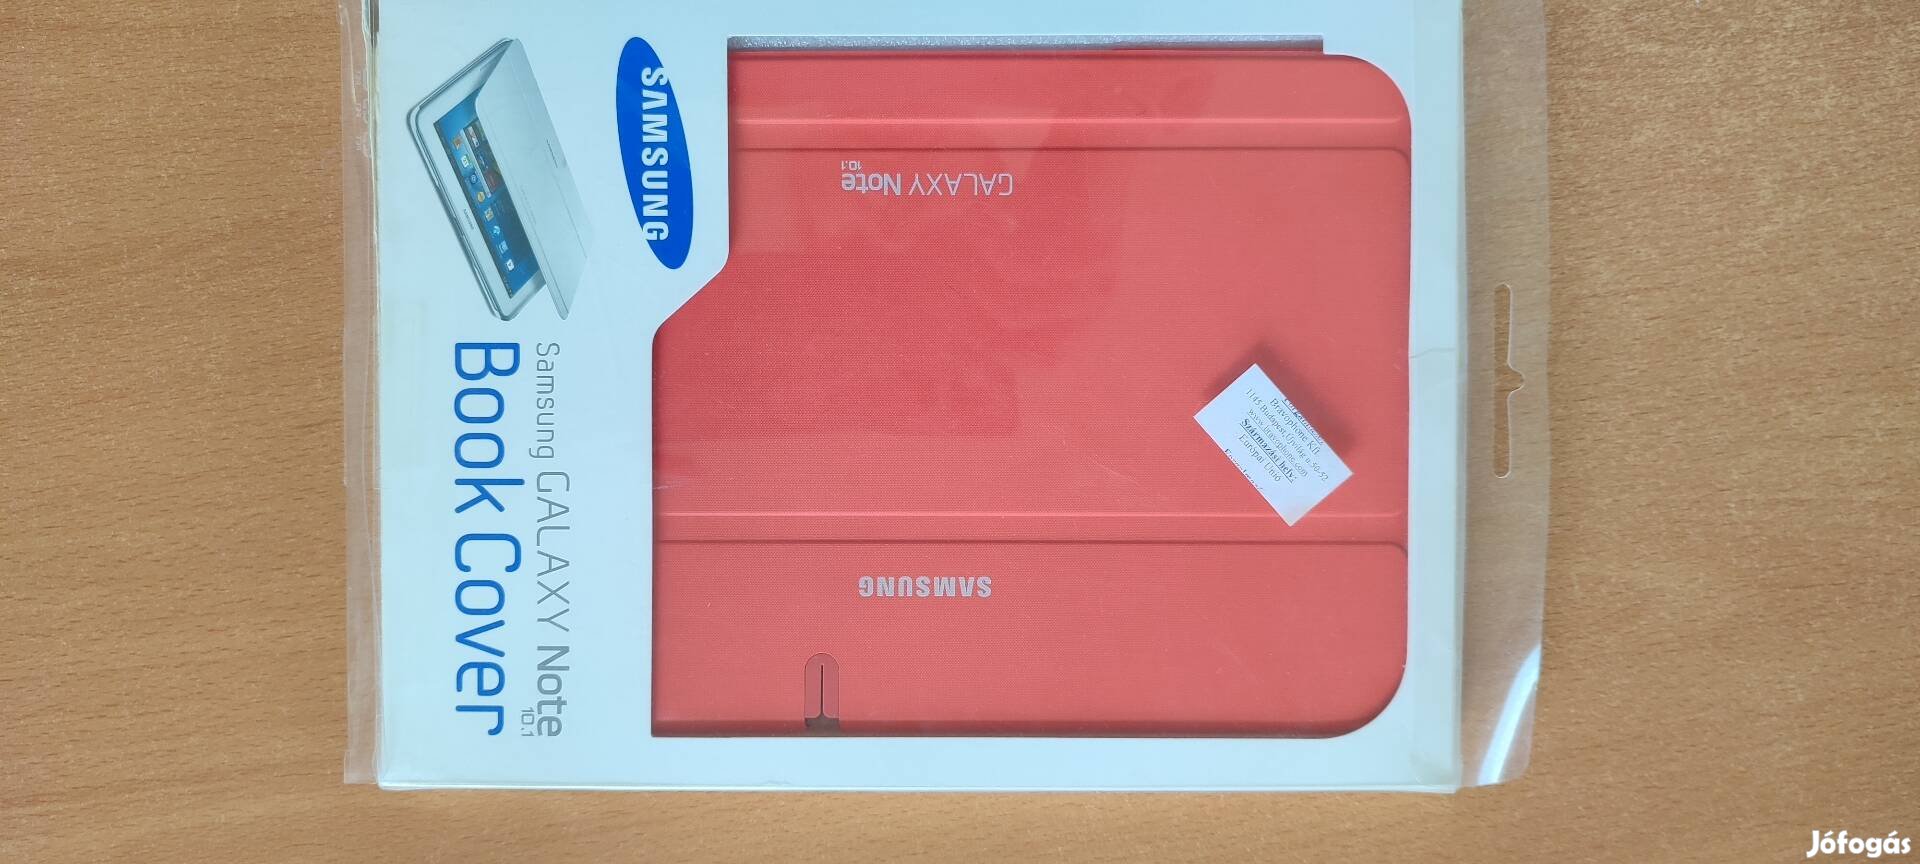 Samsung Galaxy Note 10.1 tok